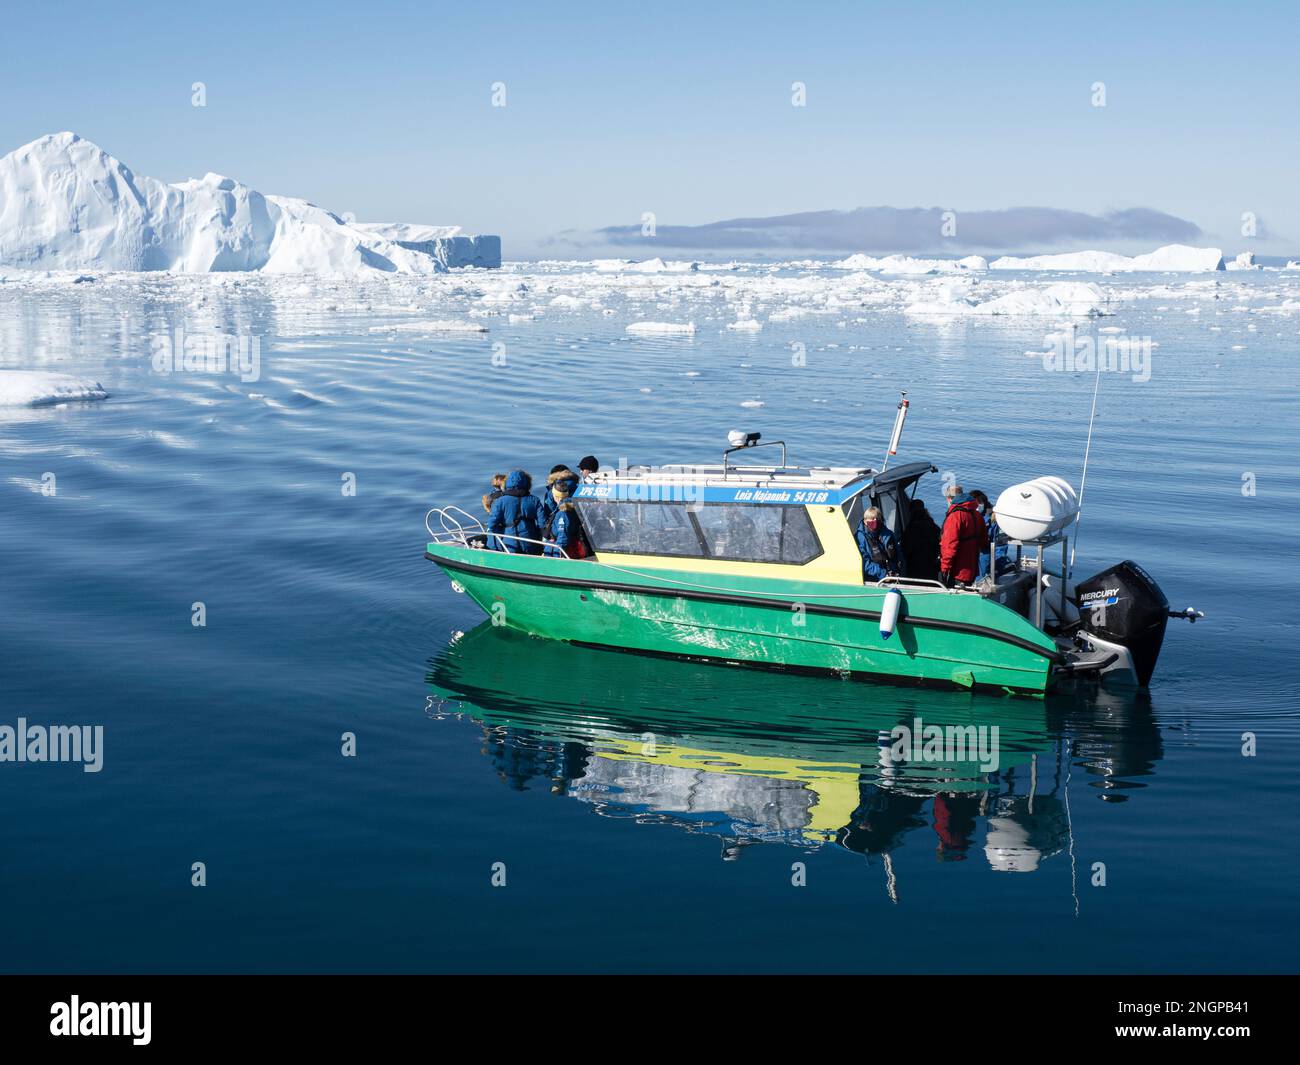 Touristes prenant une excursion sur glace dans un petit bateau observant les icebergs du Ilulissat Icefjord, juste à l'extérieur d'Ilulissat, Groenland. Banque D'Images